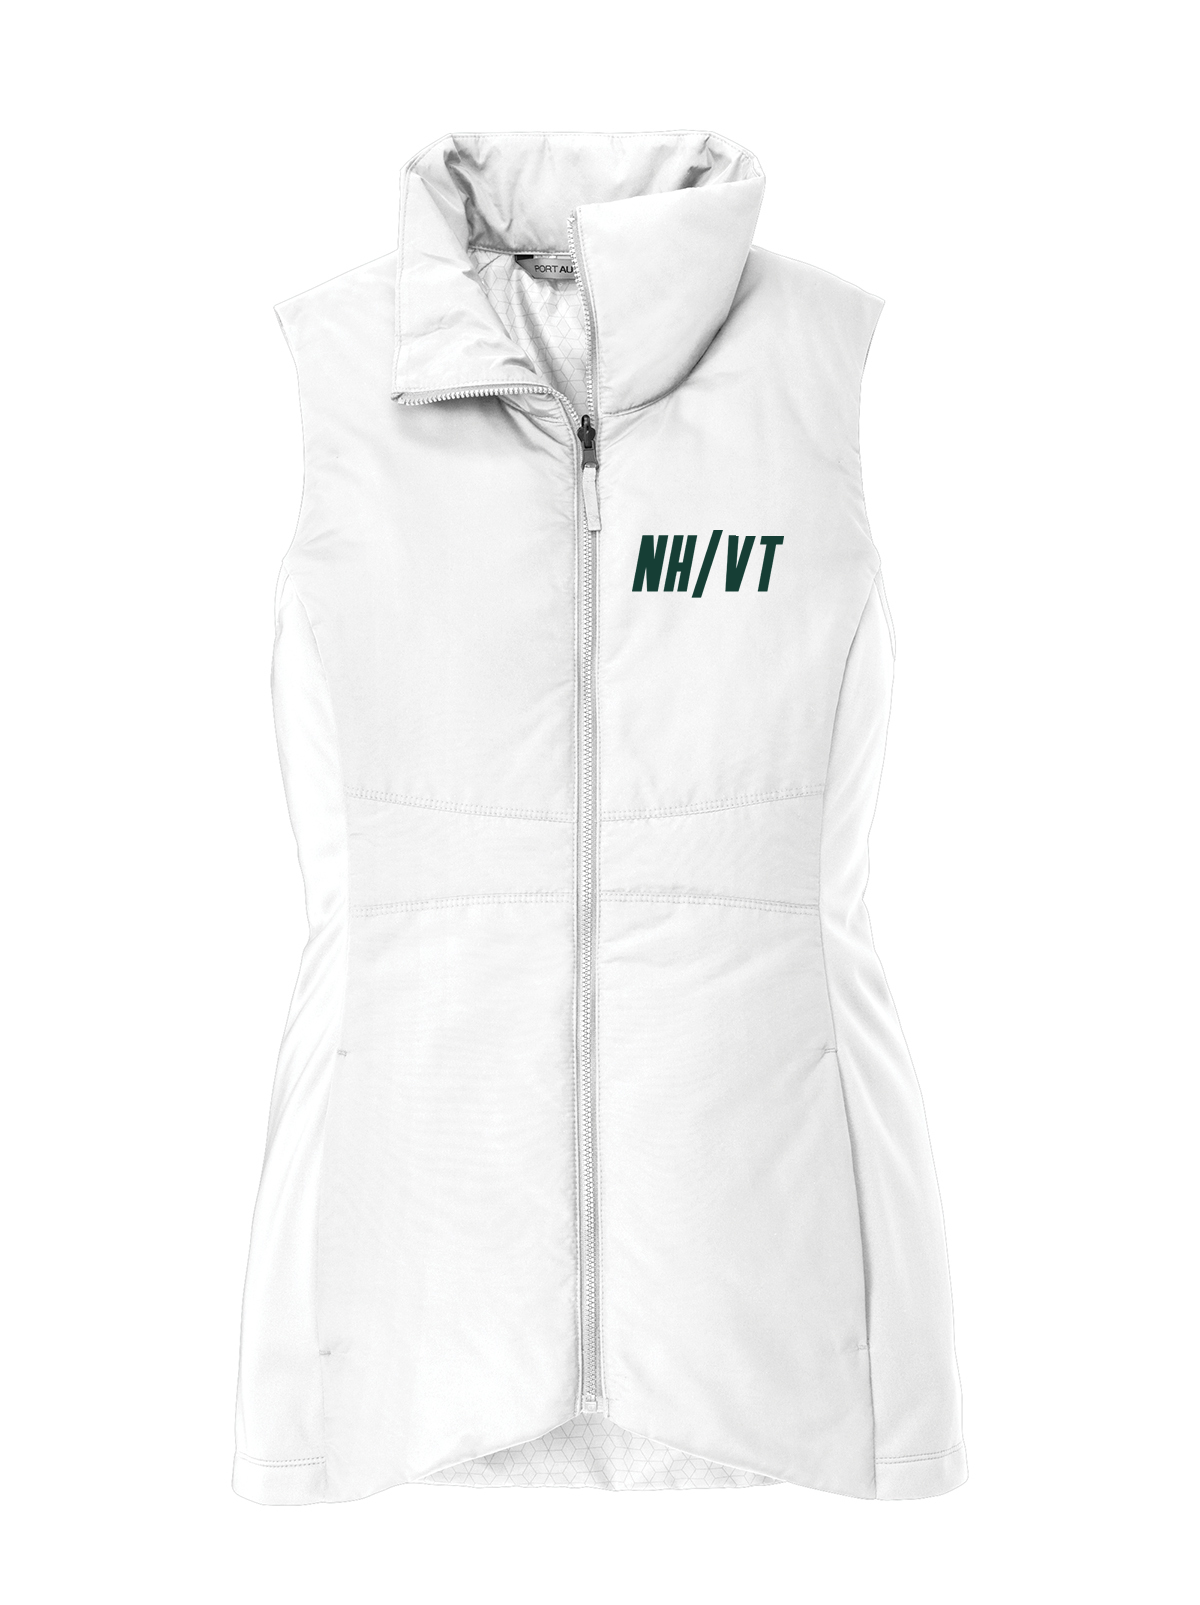 NH/VT Lacrosse Women's Vest